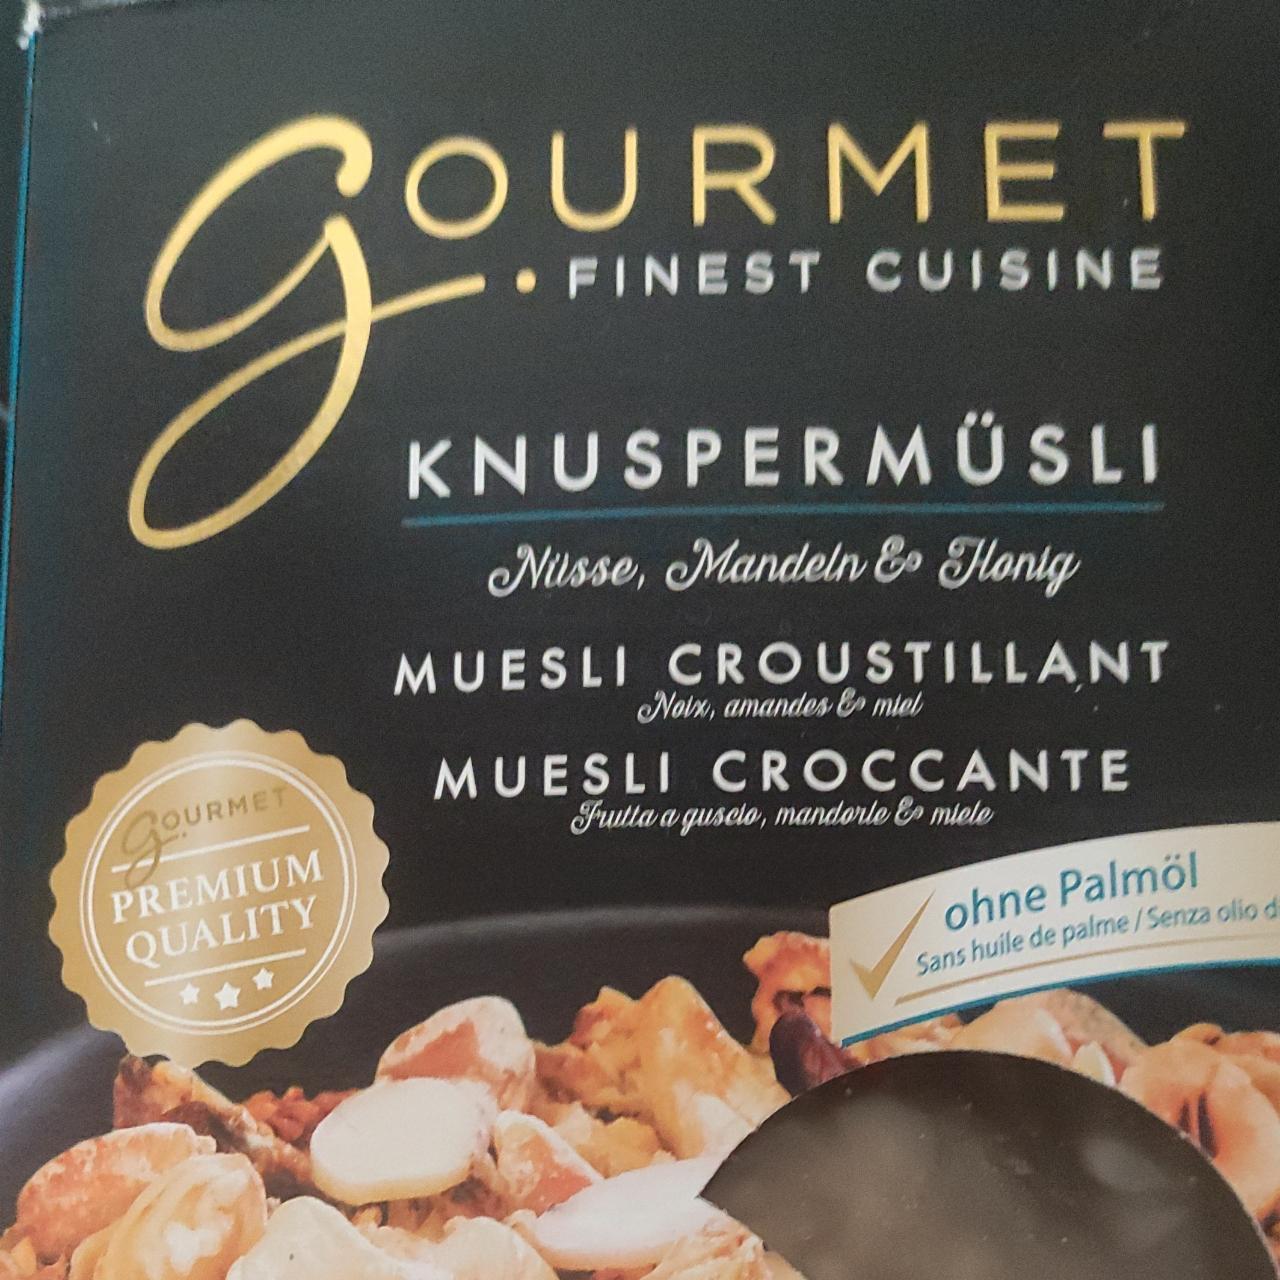 Fotografie - Knuspermüsli Gourmet finest cuisine